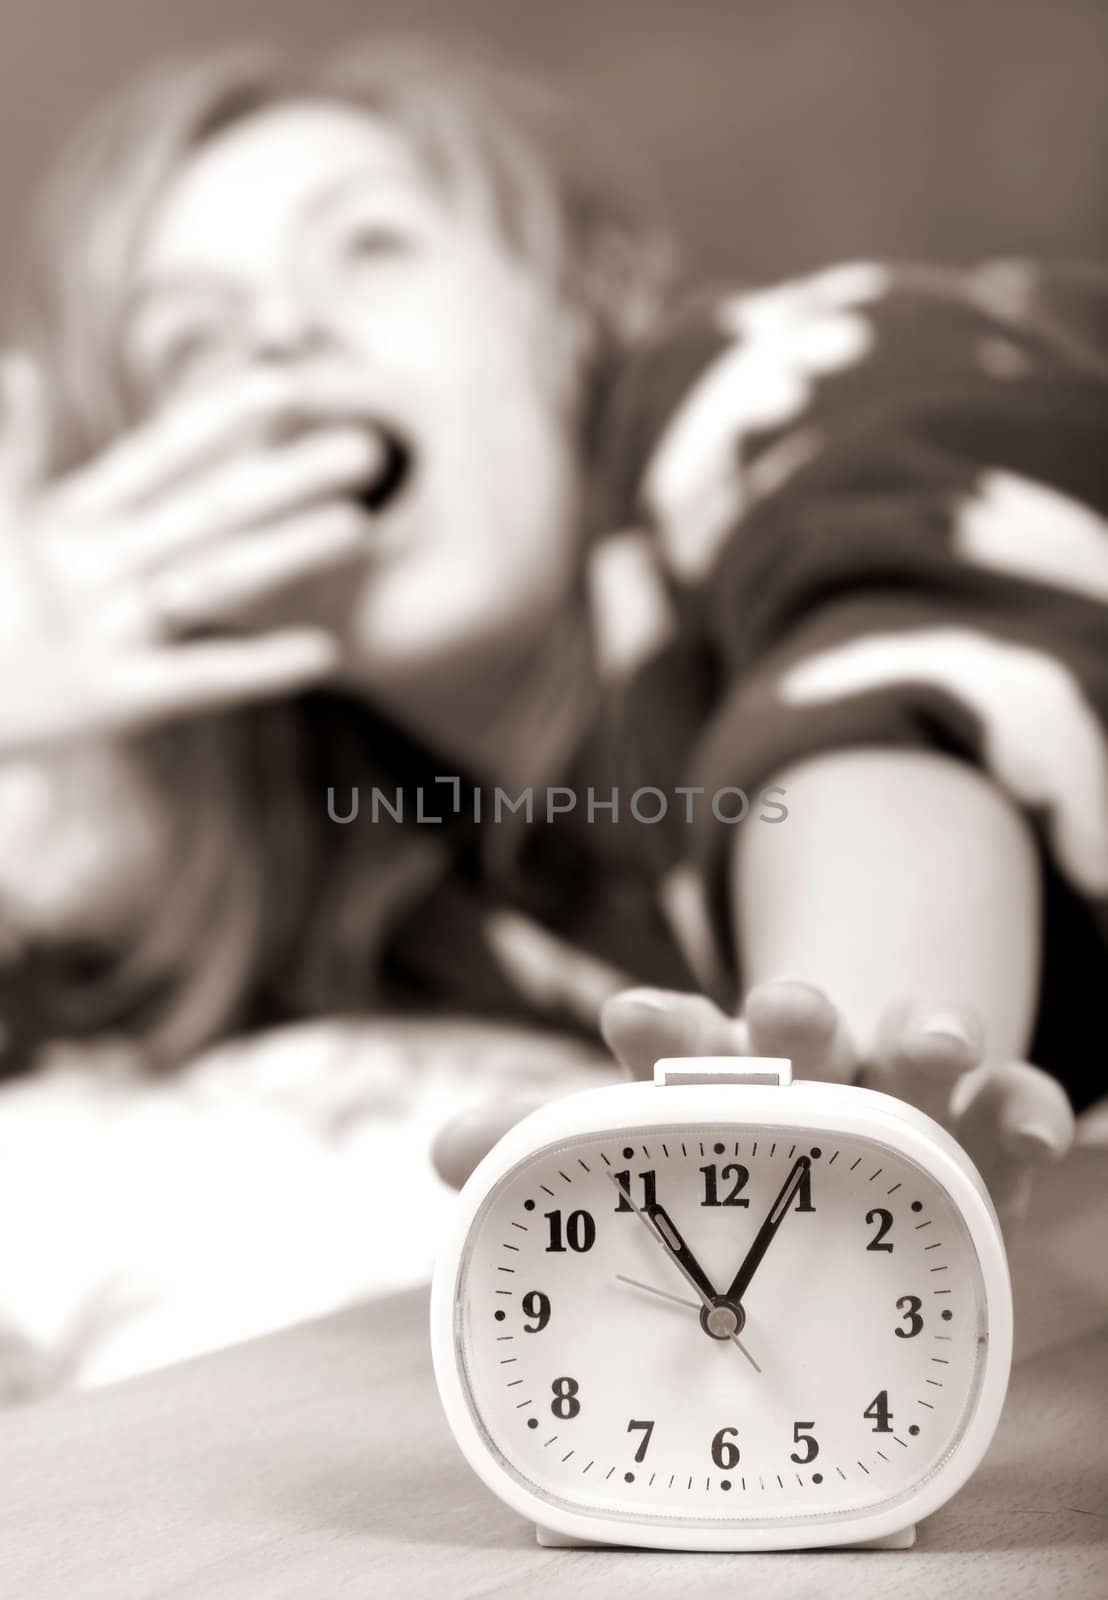 sleepy woman shuts off  alarm clock